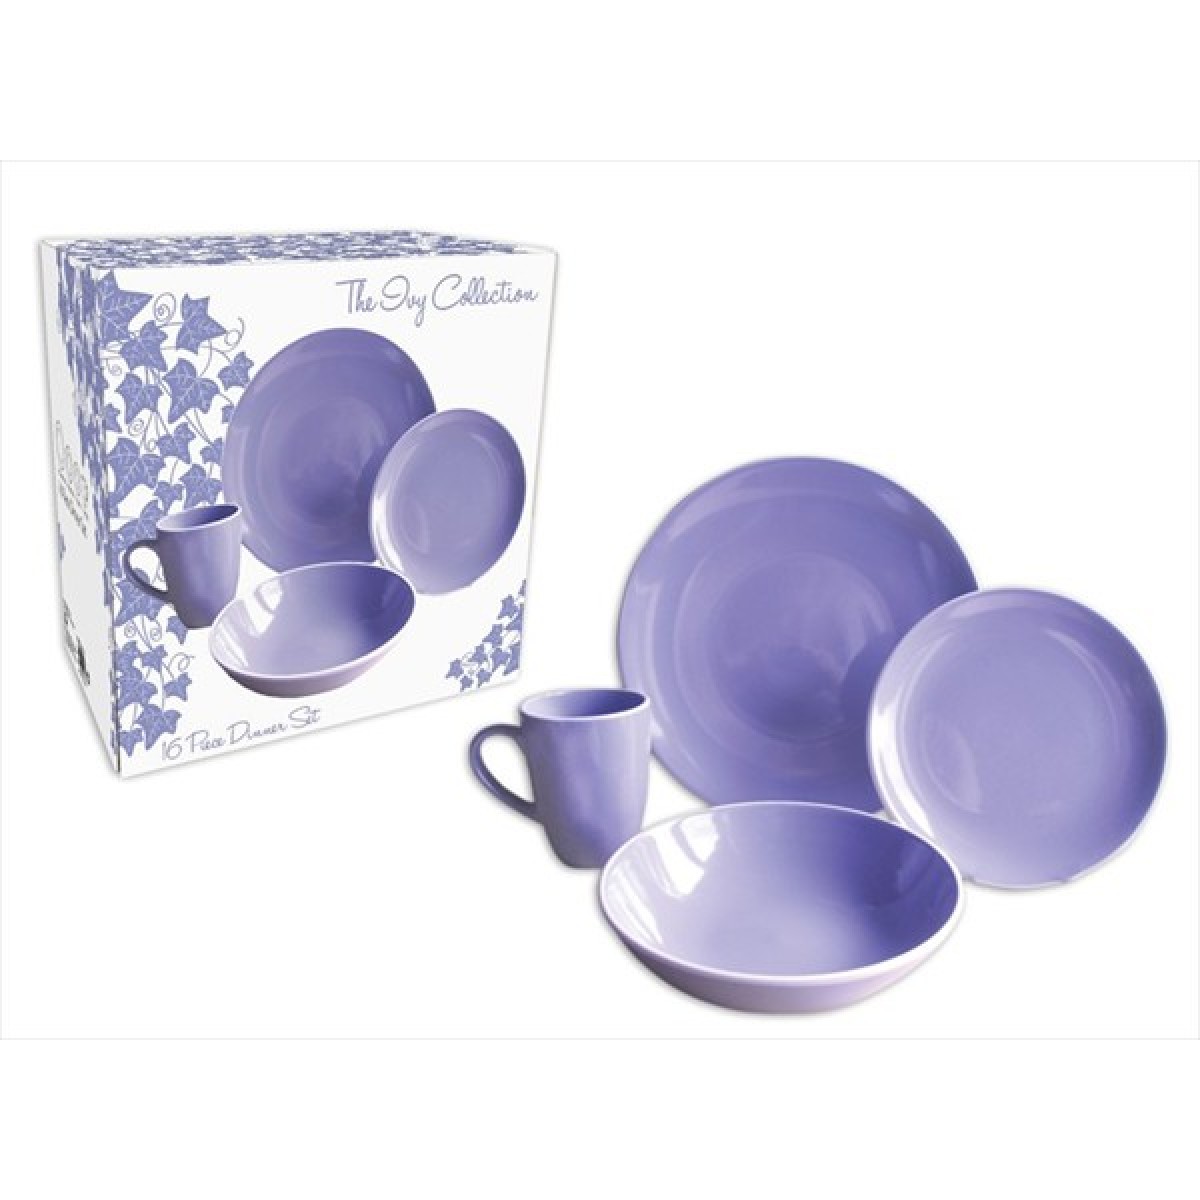 Brilliant Basics 4 Pack Dinner Plates - Pink/Purple